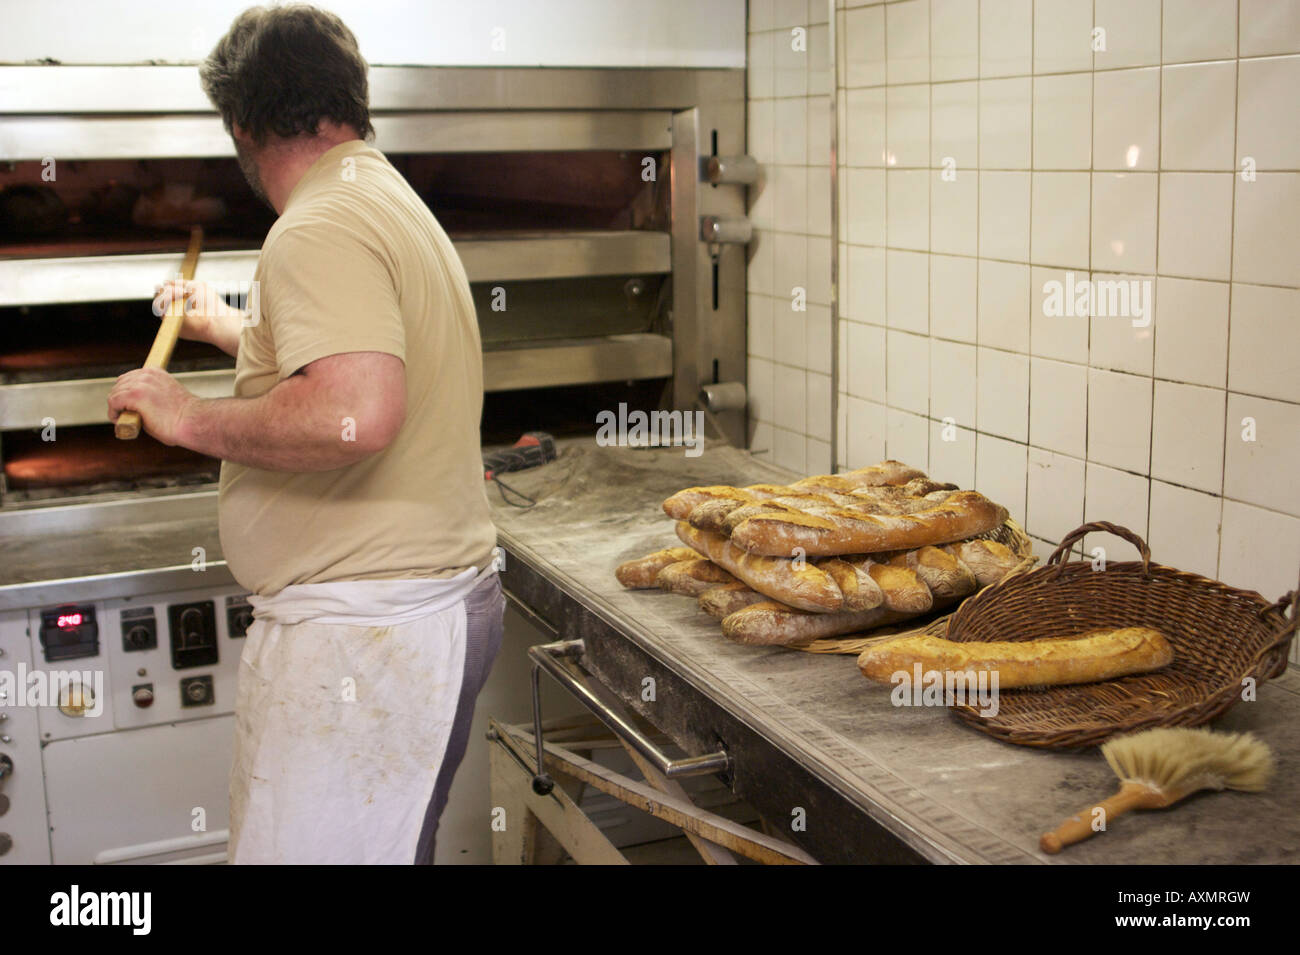 Baker Jacques Langlois de placer le pain dans son four à sa boulangerie de la rue Beauvoisine à Rouen, Seine-Maritime, France. Banque D'Images